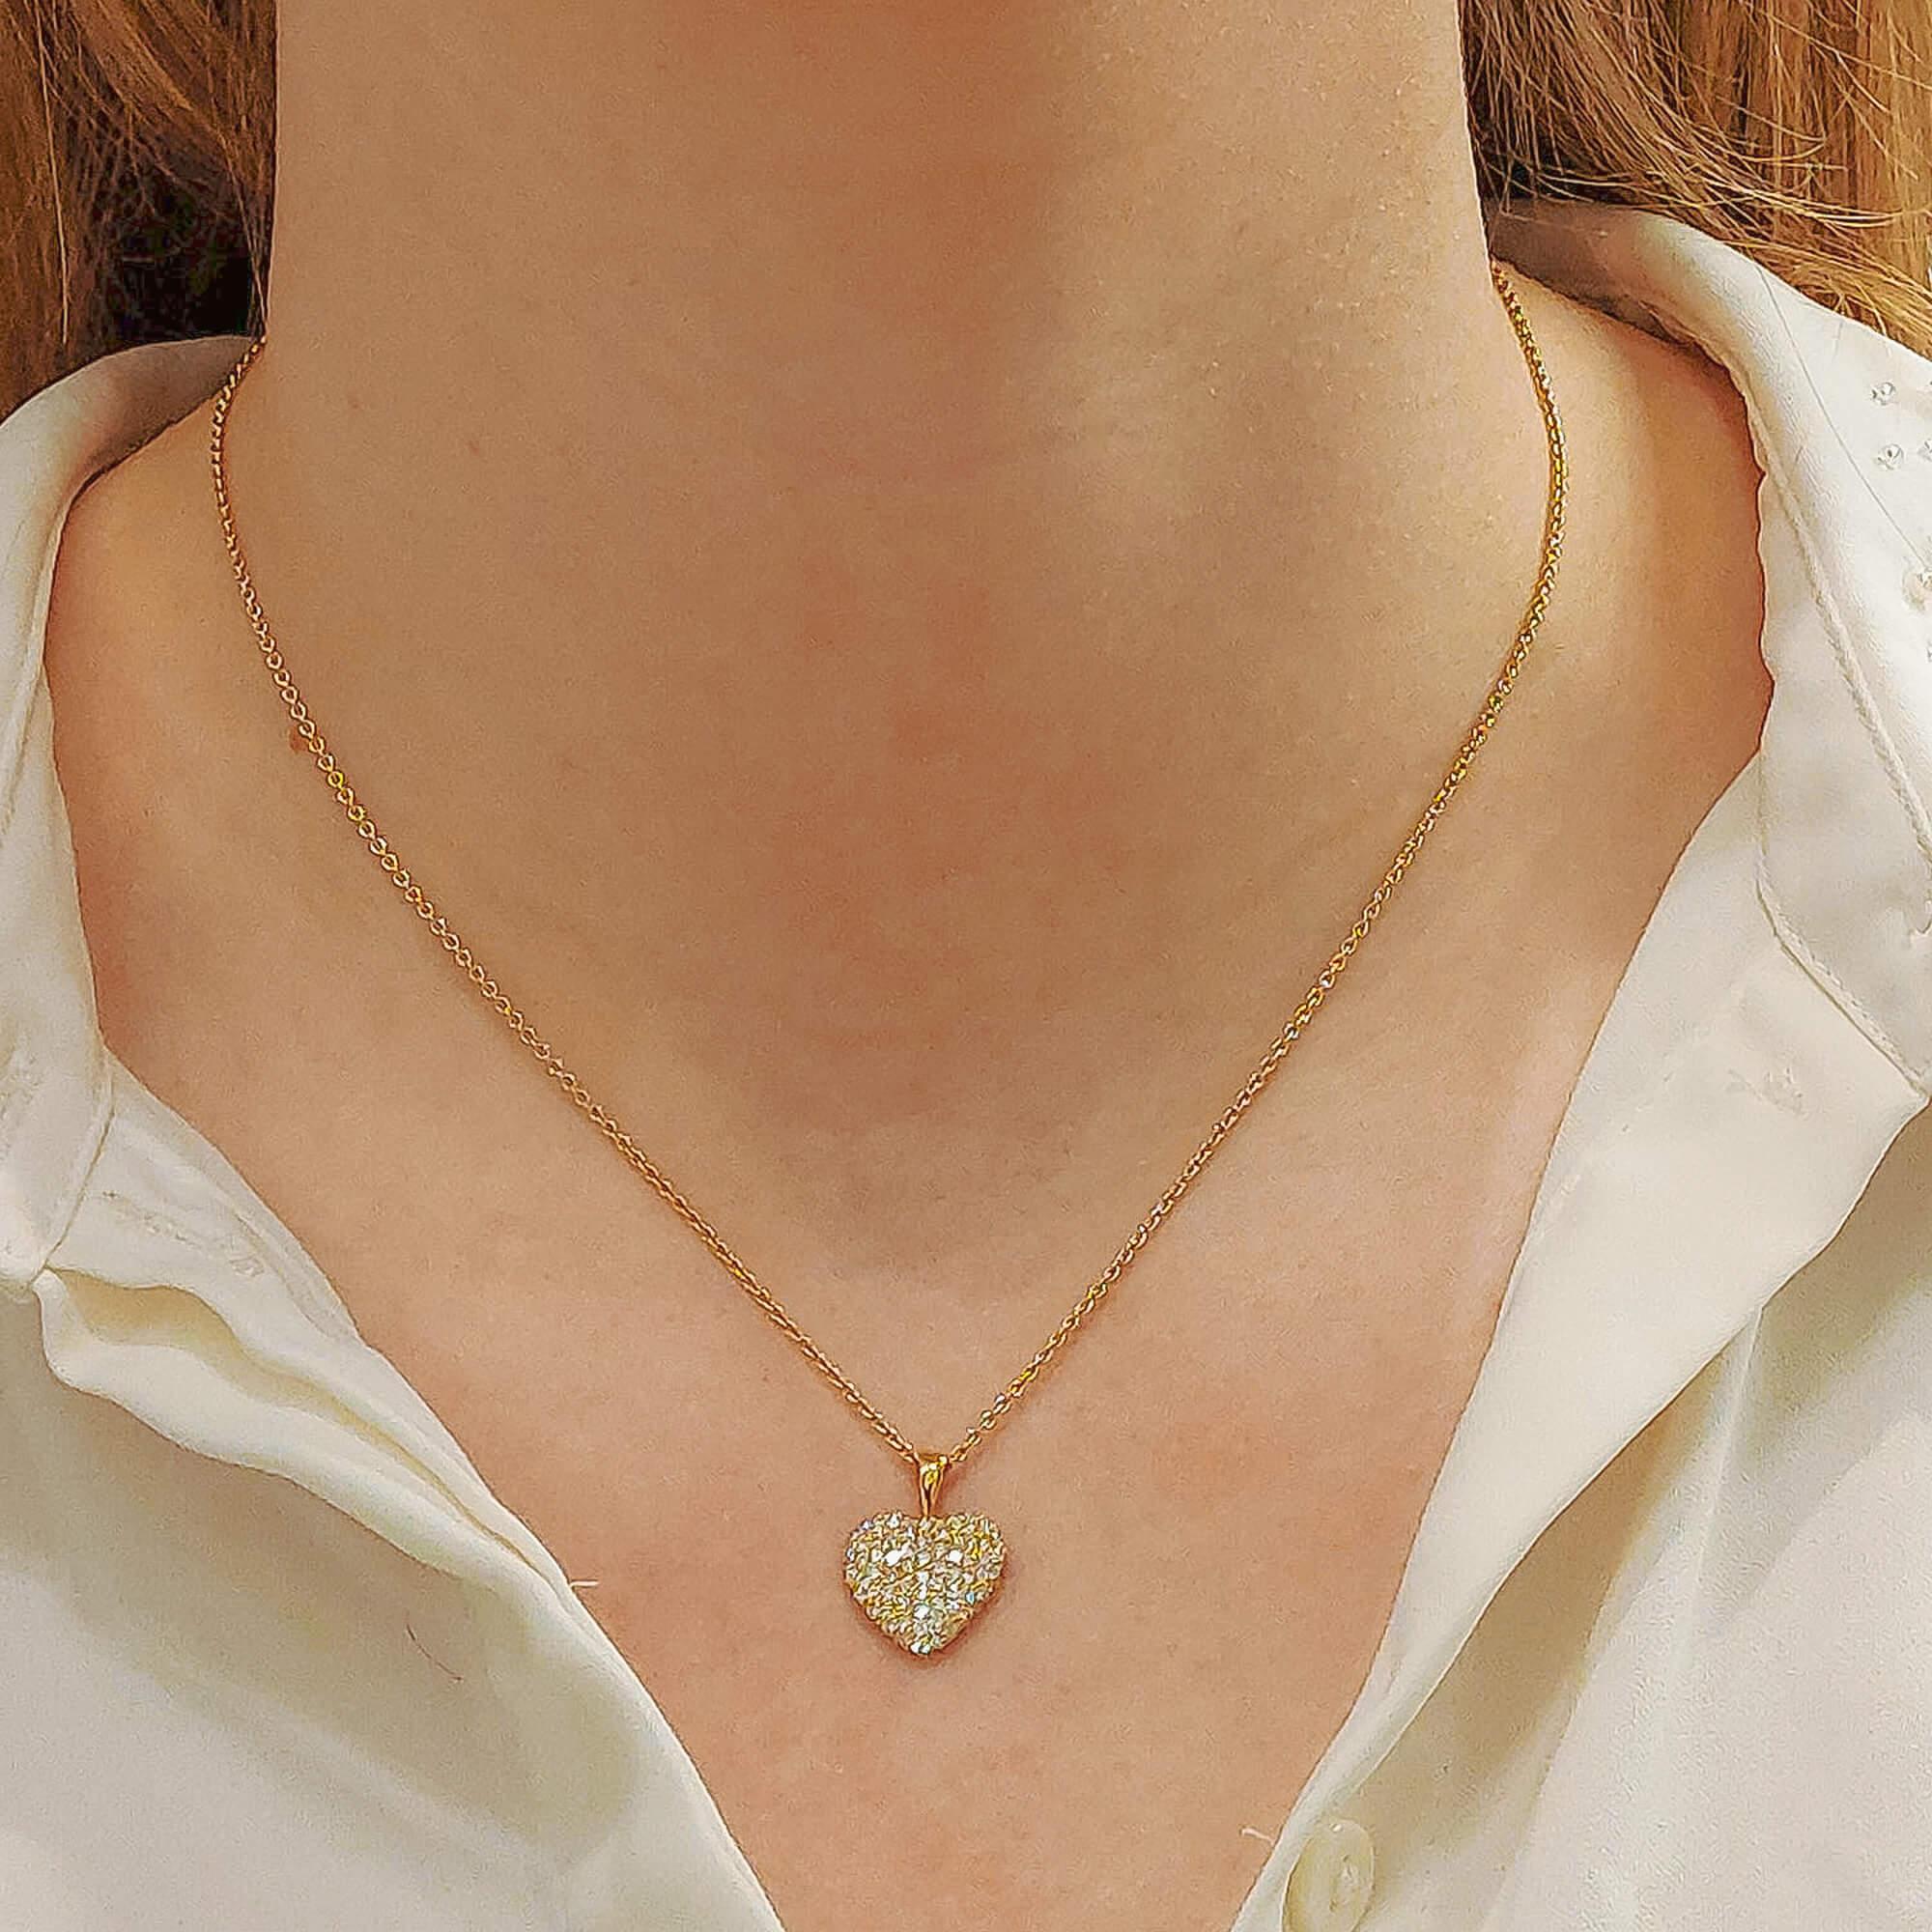 Un pendentif cœur en diamant serti en or jaune 18k. 

Le pendentif est conçu dans un motif classique de cœur et est pavé de diamants ronds de taille brillante. Les diamants sertis dans le cœur sont sertis dans une galerie ajourée fantaisie avec des